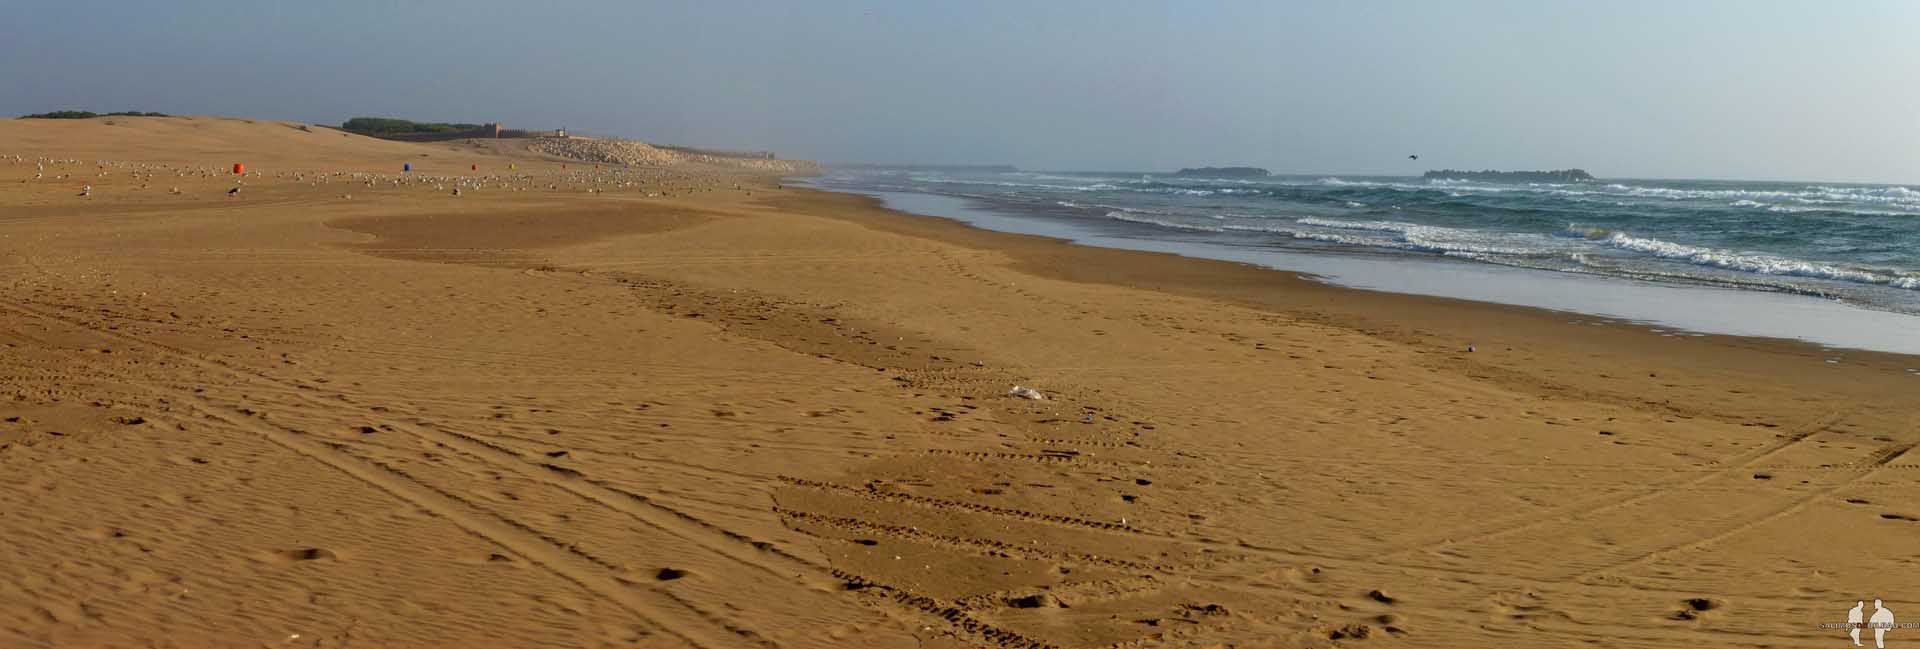 Viajar por libre a Marruecos Pano, Playa de Agadir